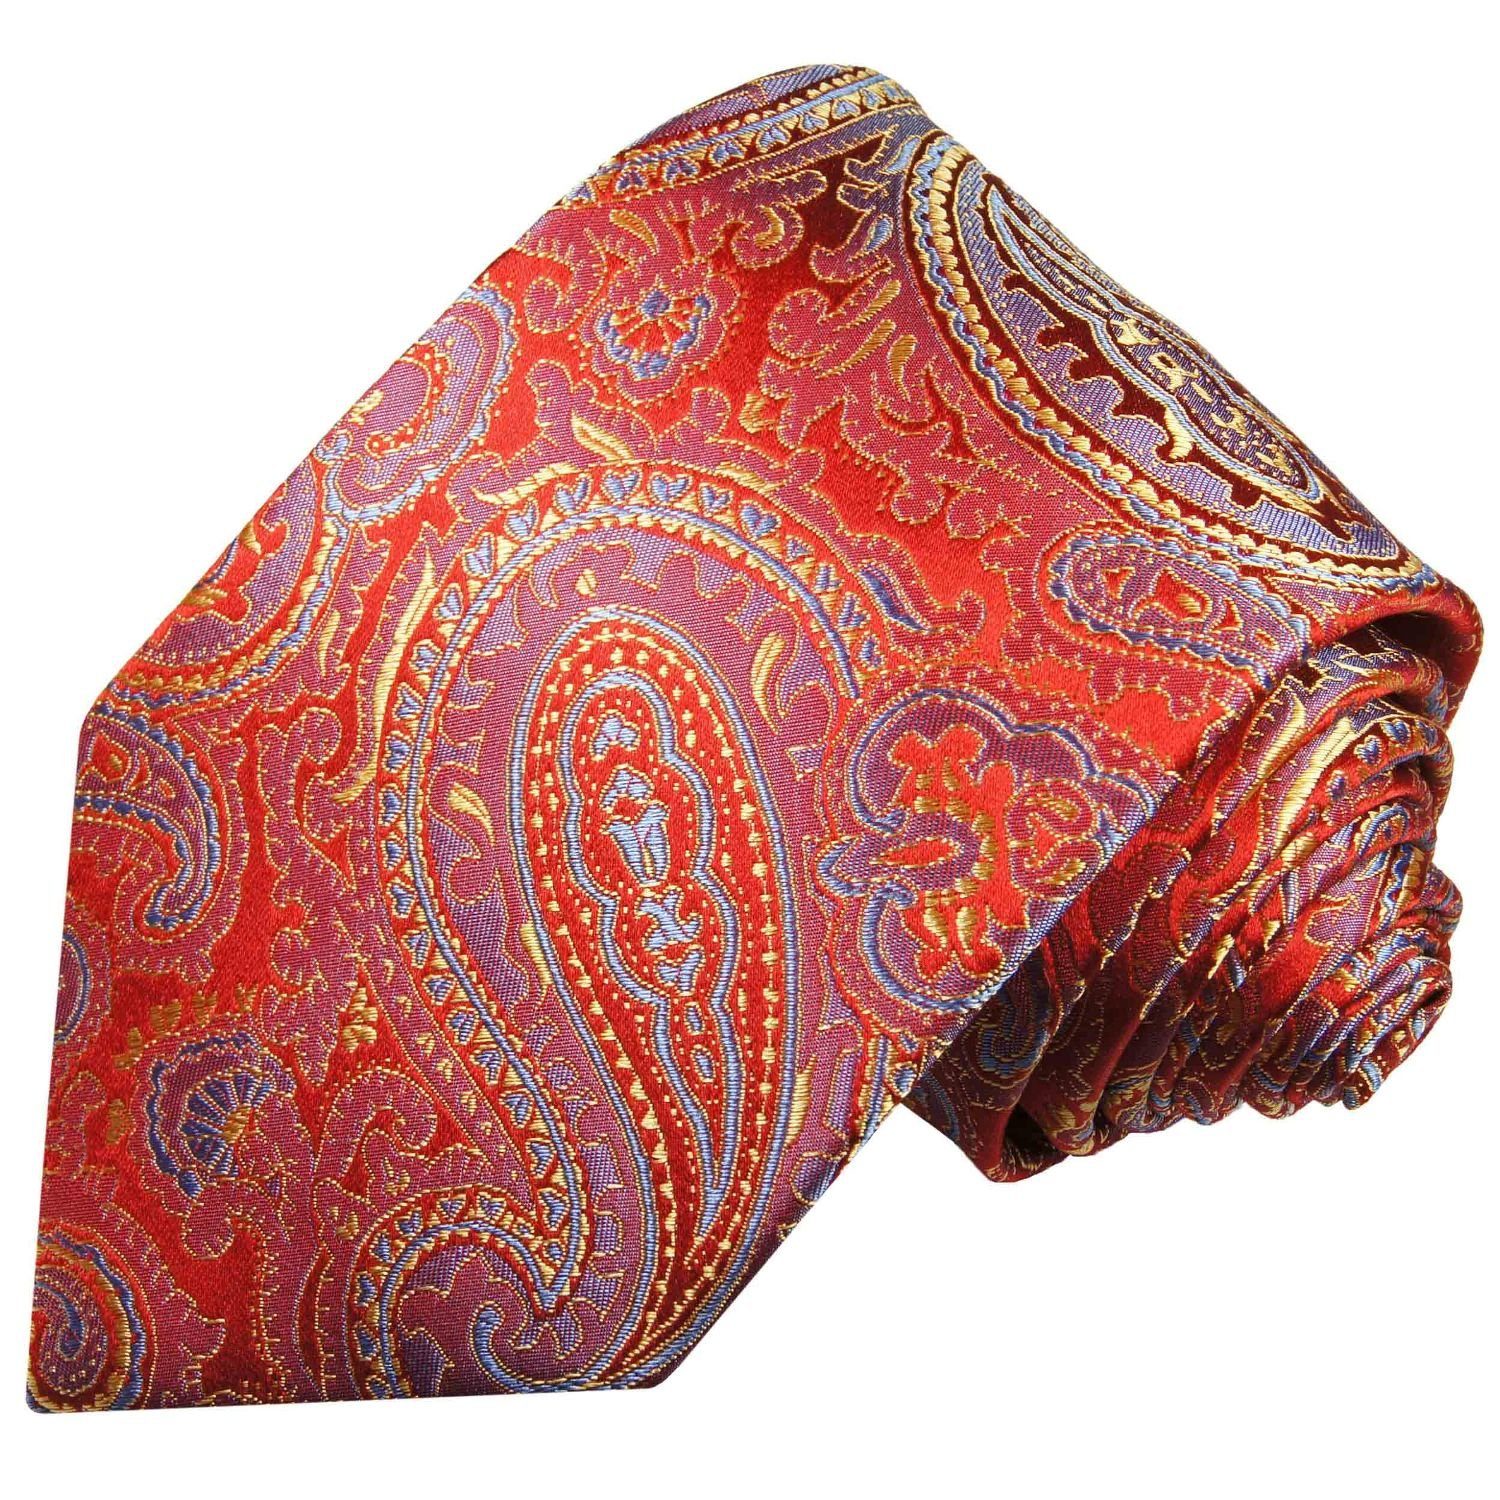 Herren Seidenkrawatte Schmal blau rot Schlips Seide brokat Malone Paul gold (6cm), 696 paisley Elegante Krawatte 100%